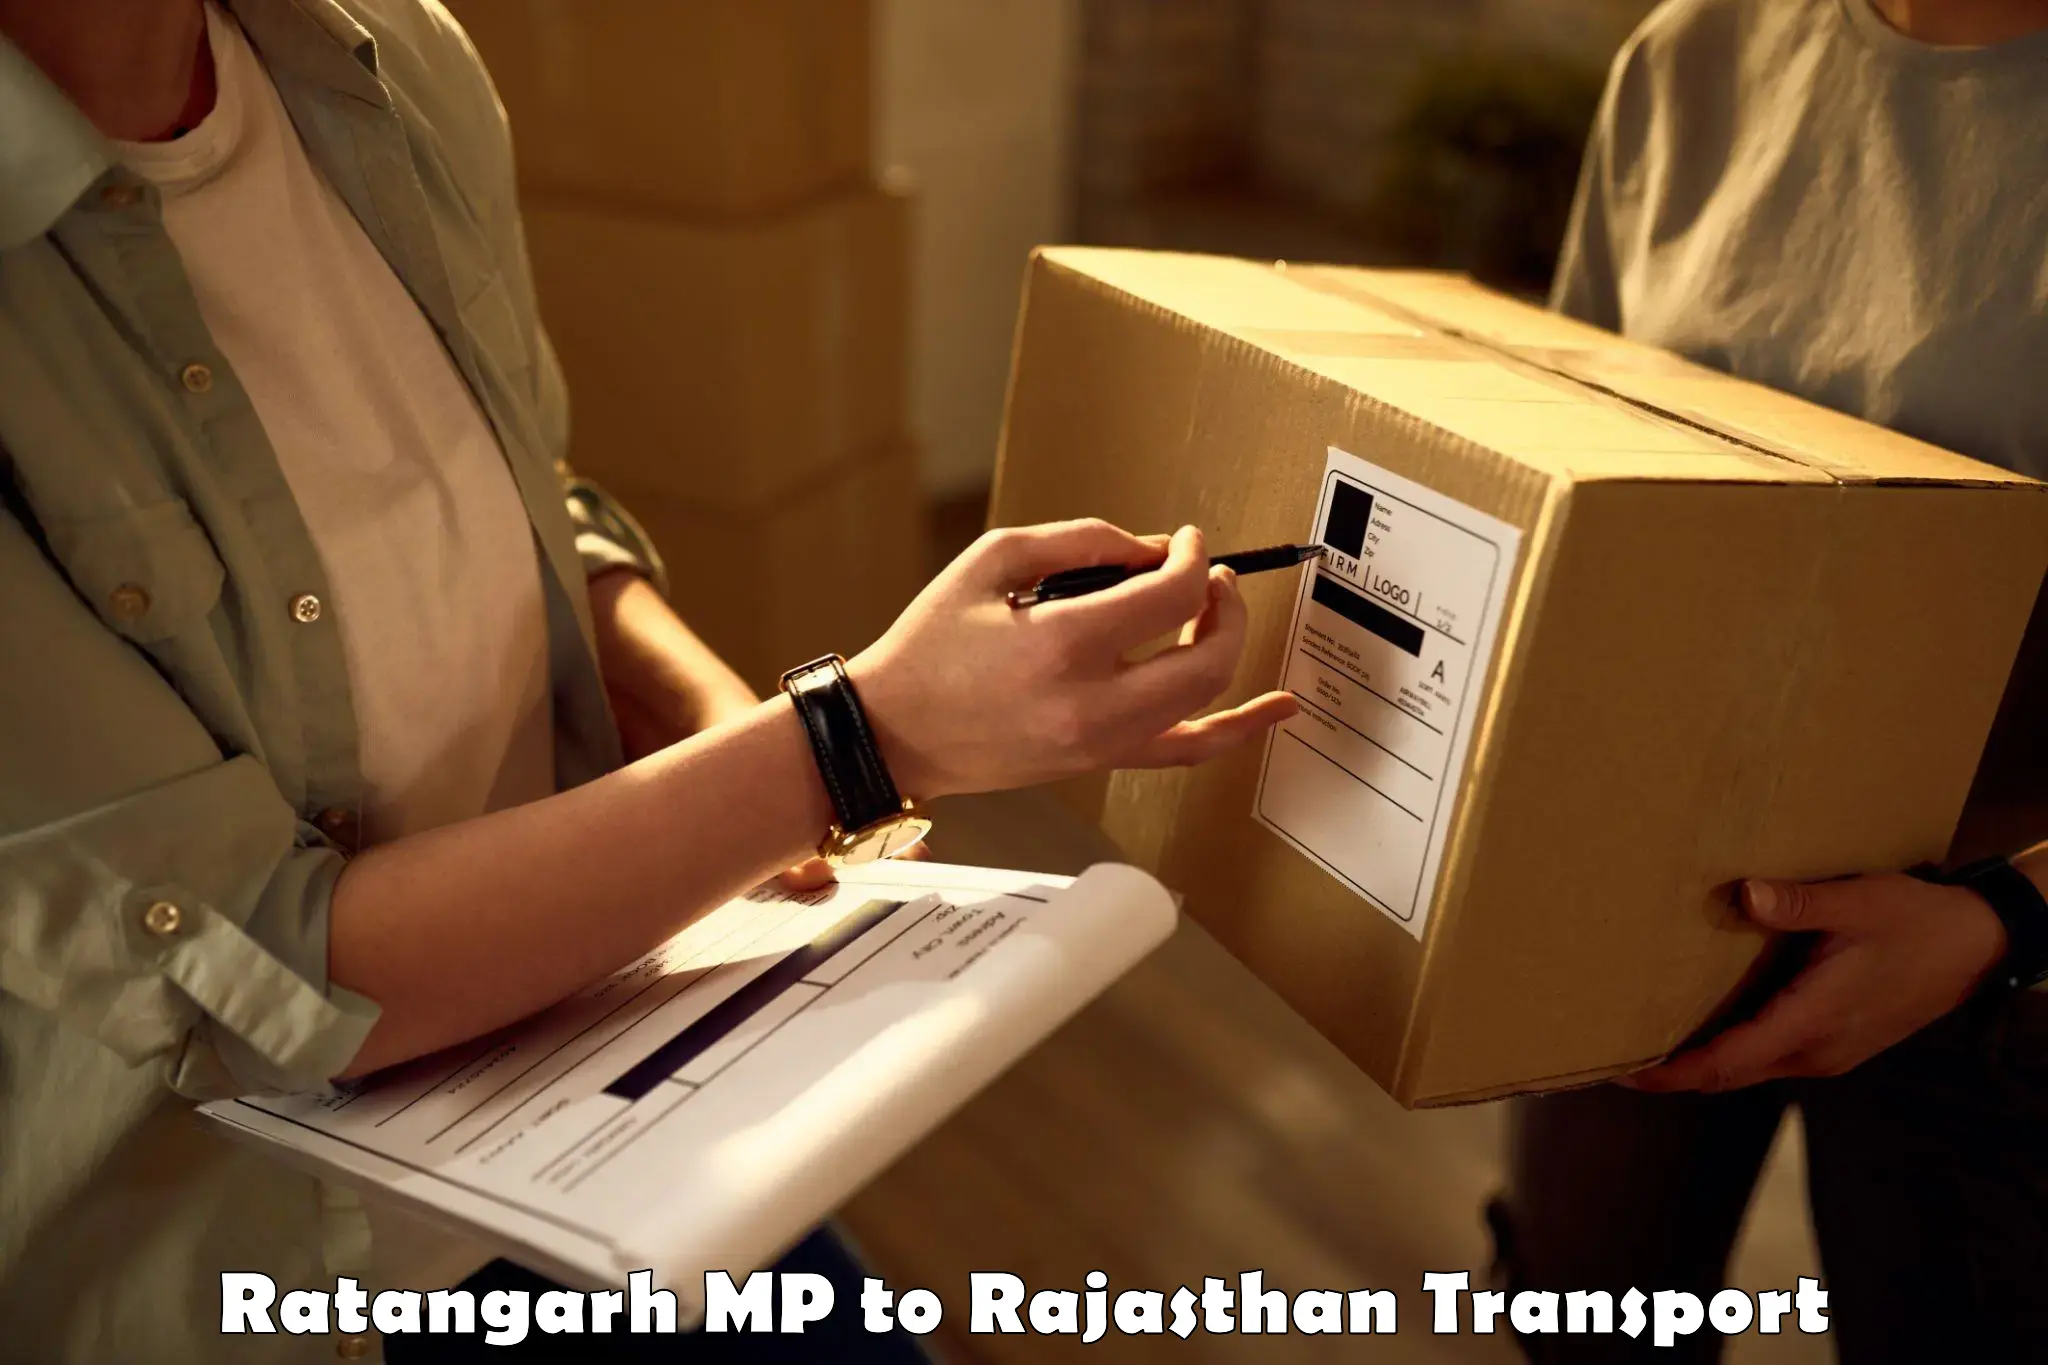 Air freight transport services Ratangarh MP to Viratnagar